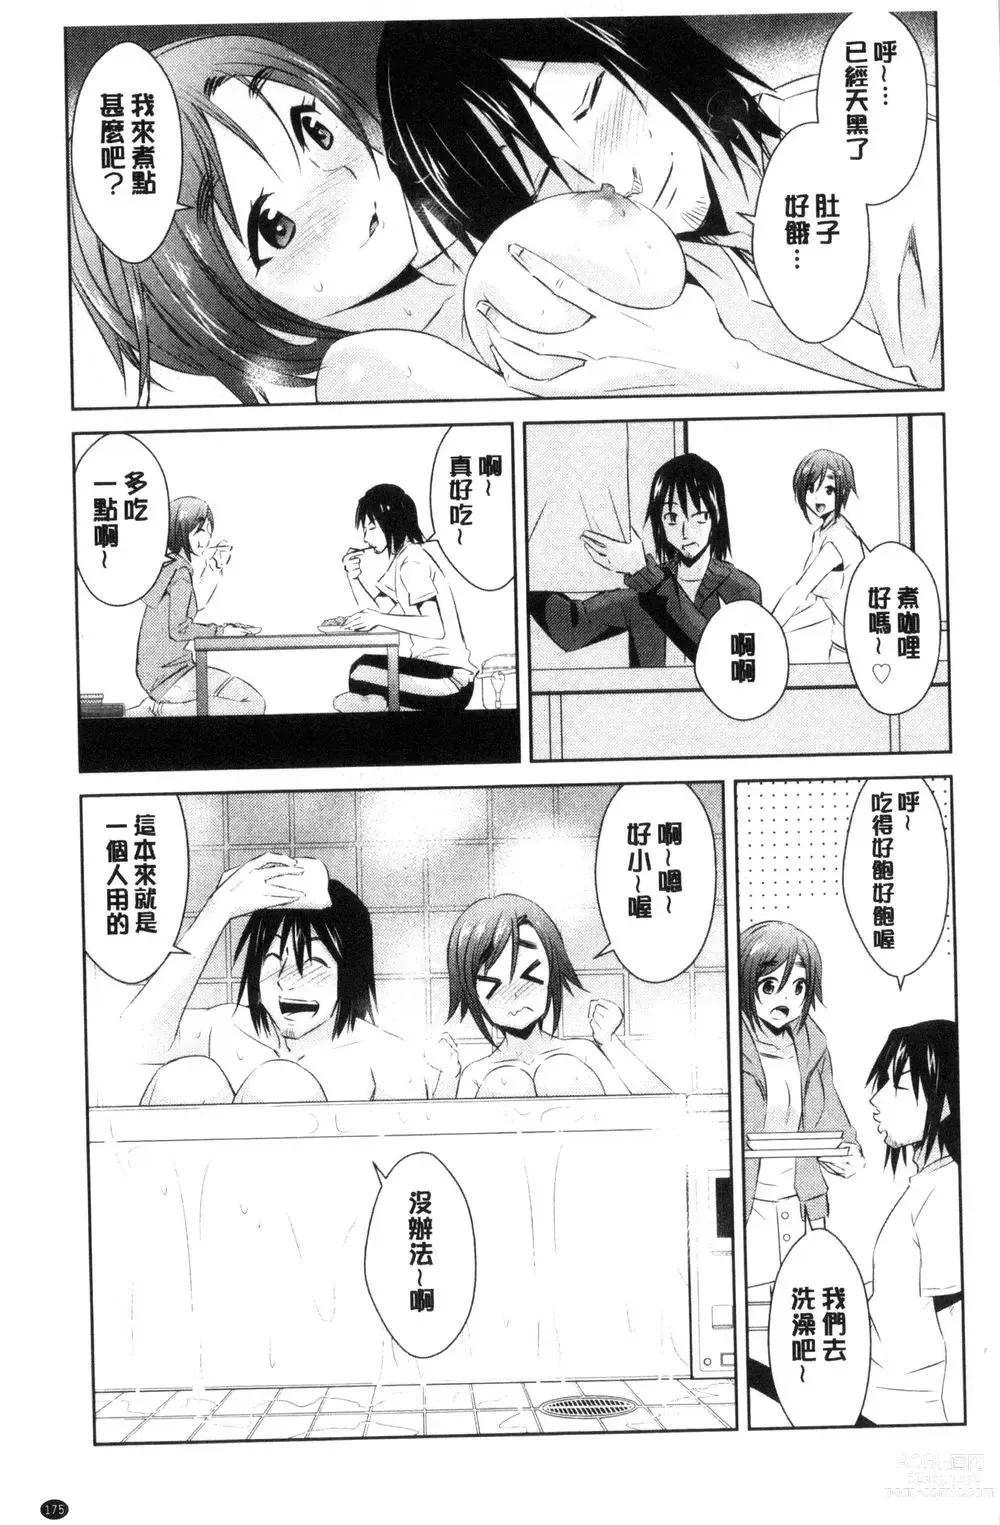 Page 177 of doujinshi ともだちっくす